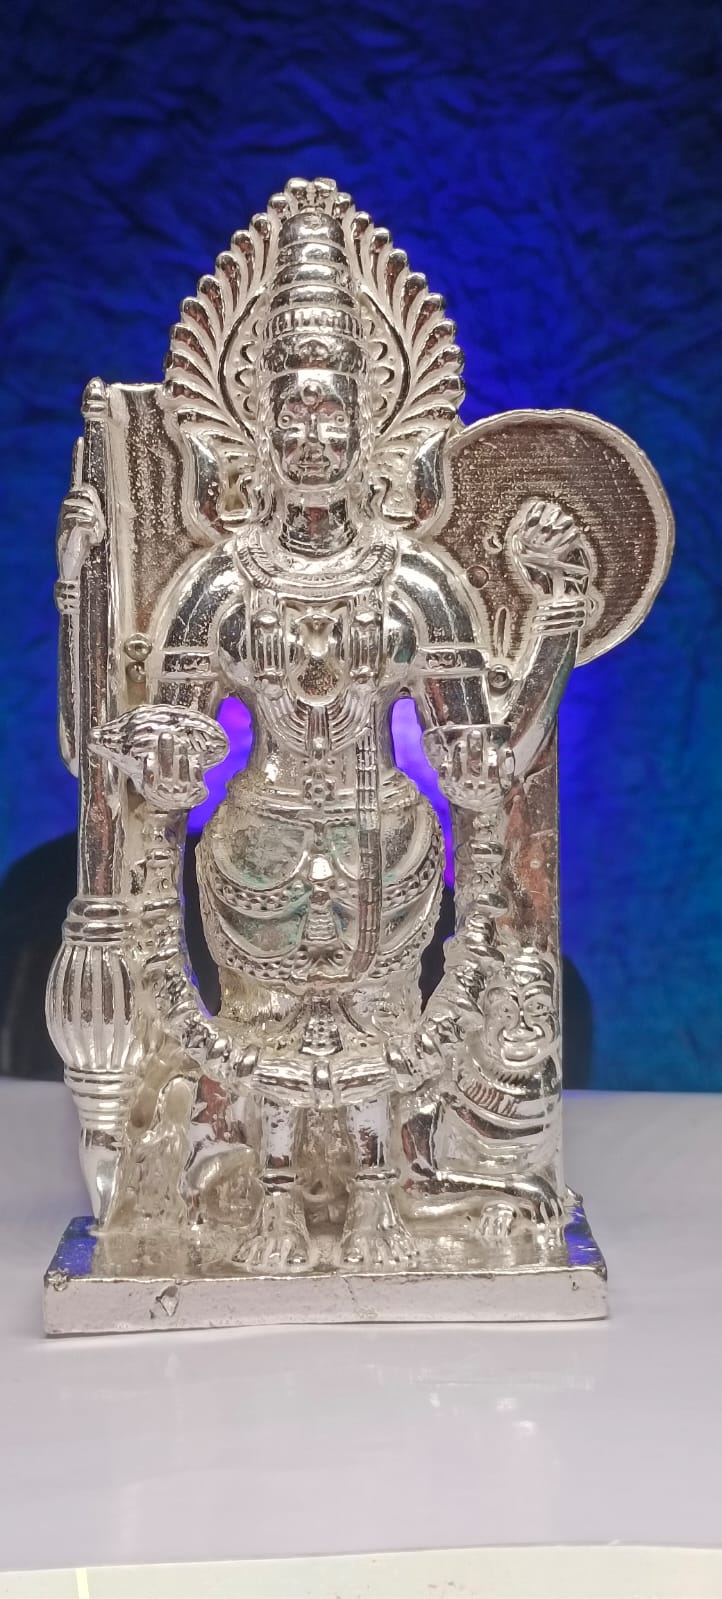 Kolhapur Mahalaxmi mul swarup silver idol 5 inches